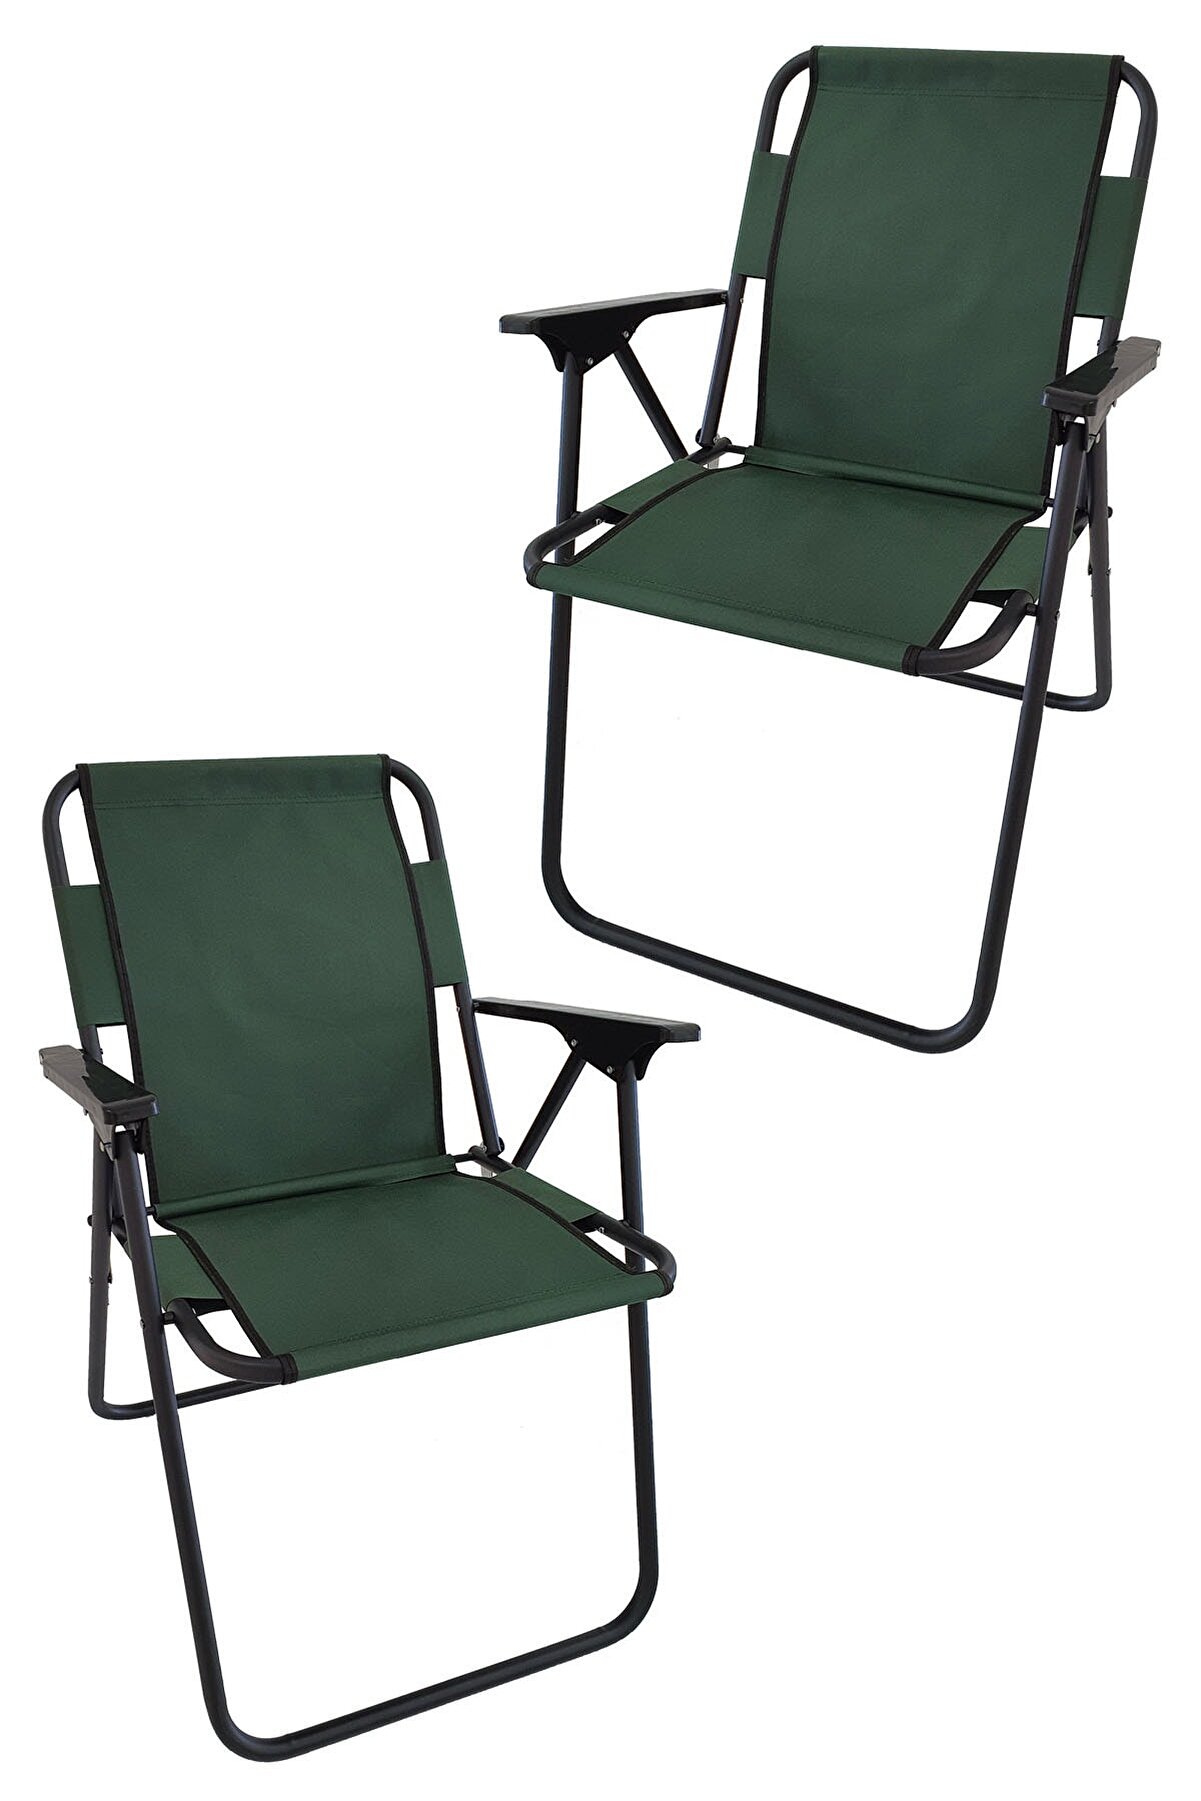 Bofigo 2 Adet Kamp Sandalyesi Katlanır Sandalye Piknik Sandalyesi Plaj Sandalyesi Yeşil.